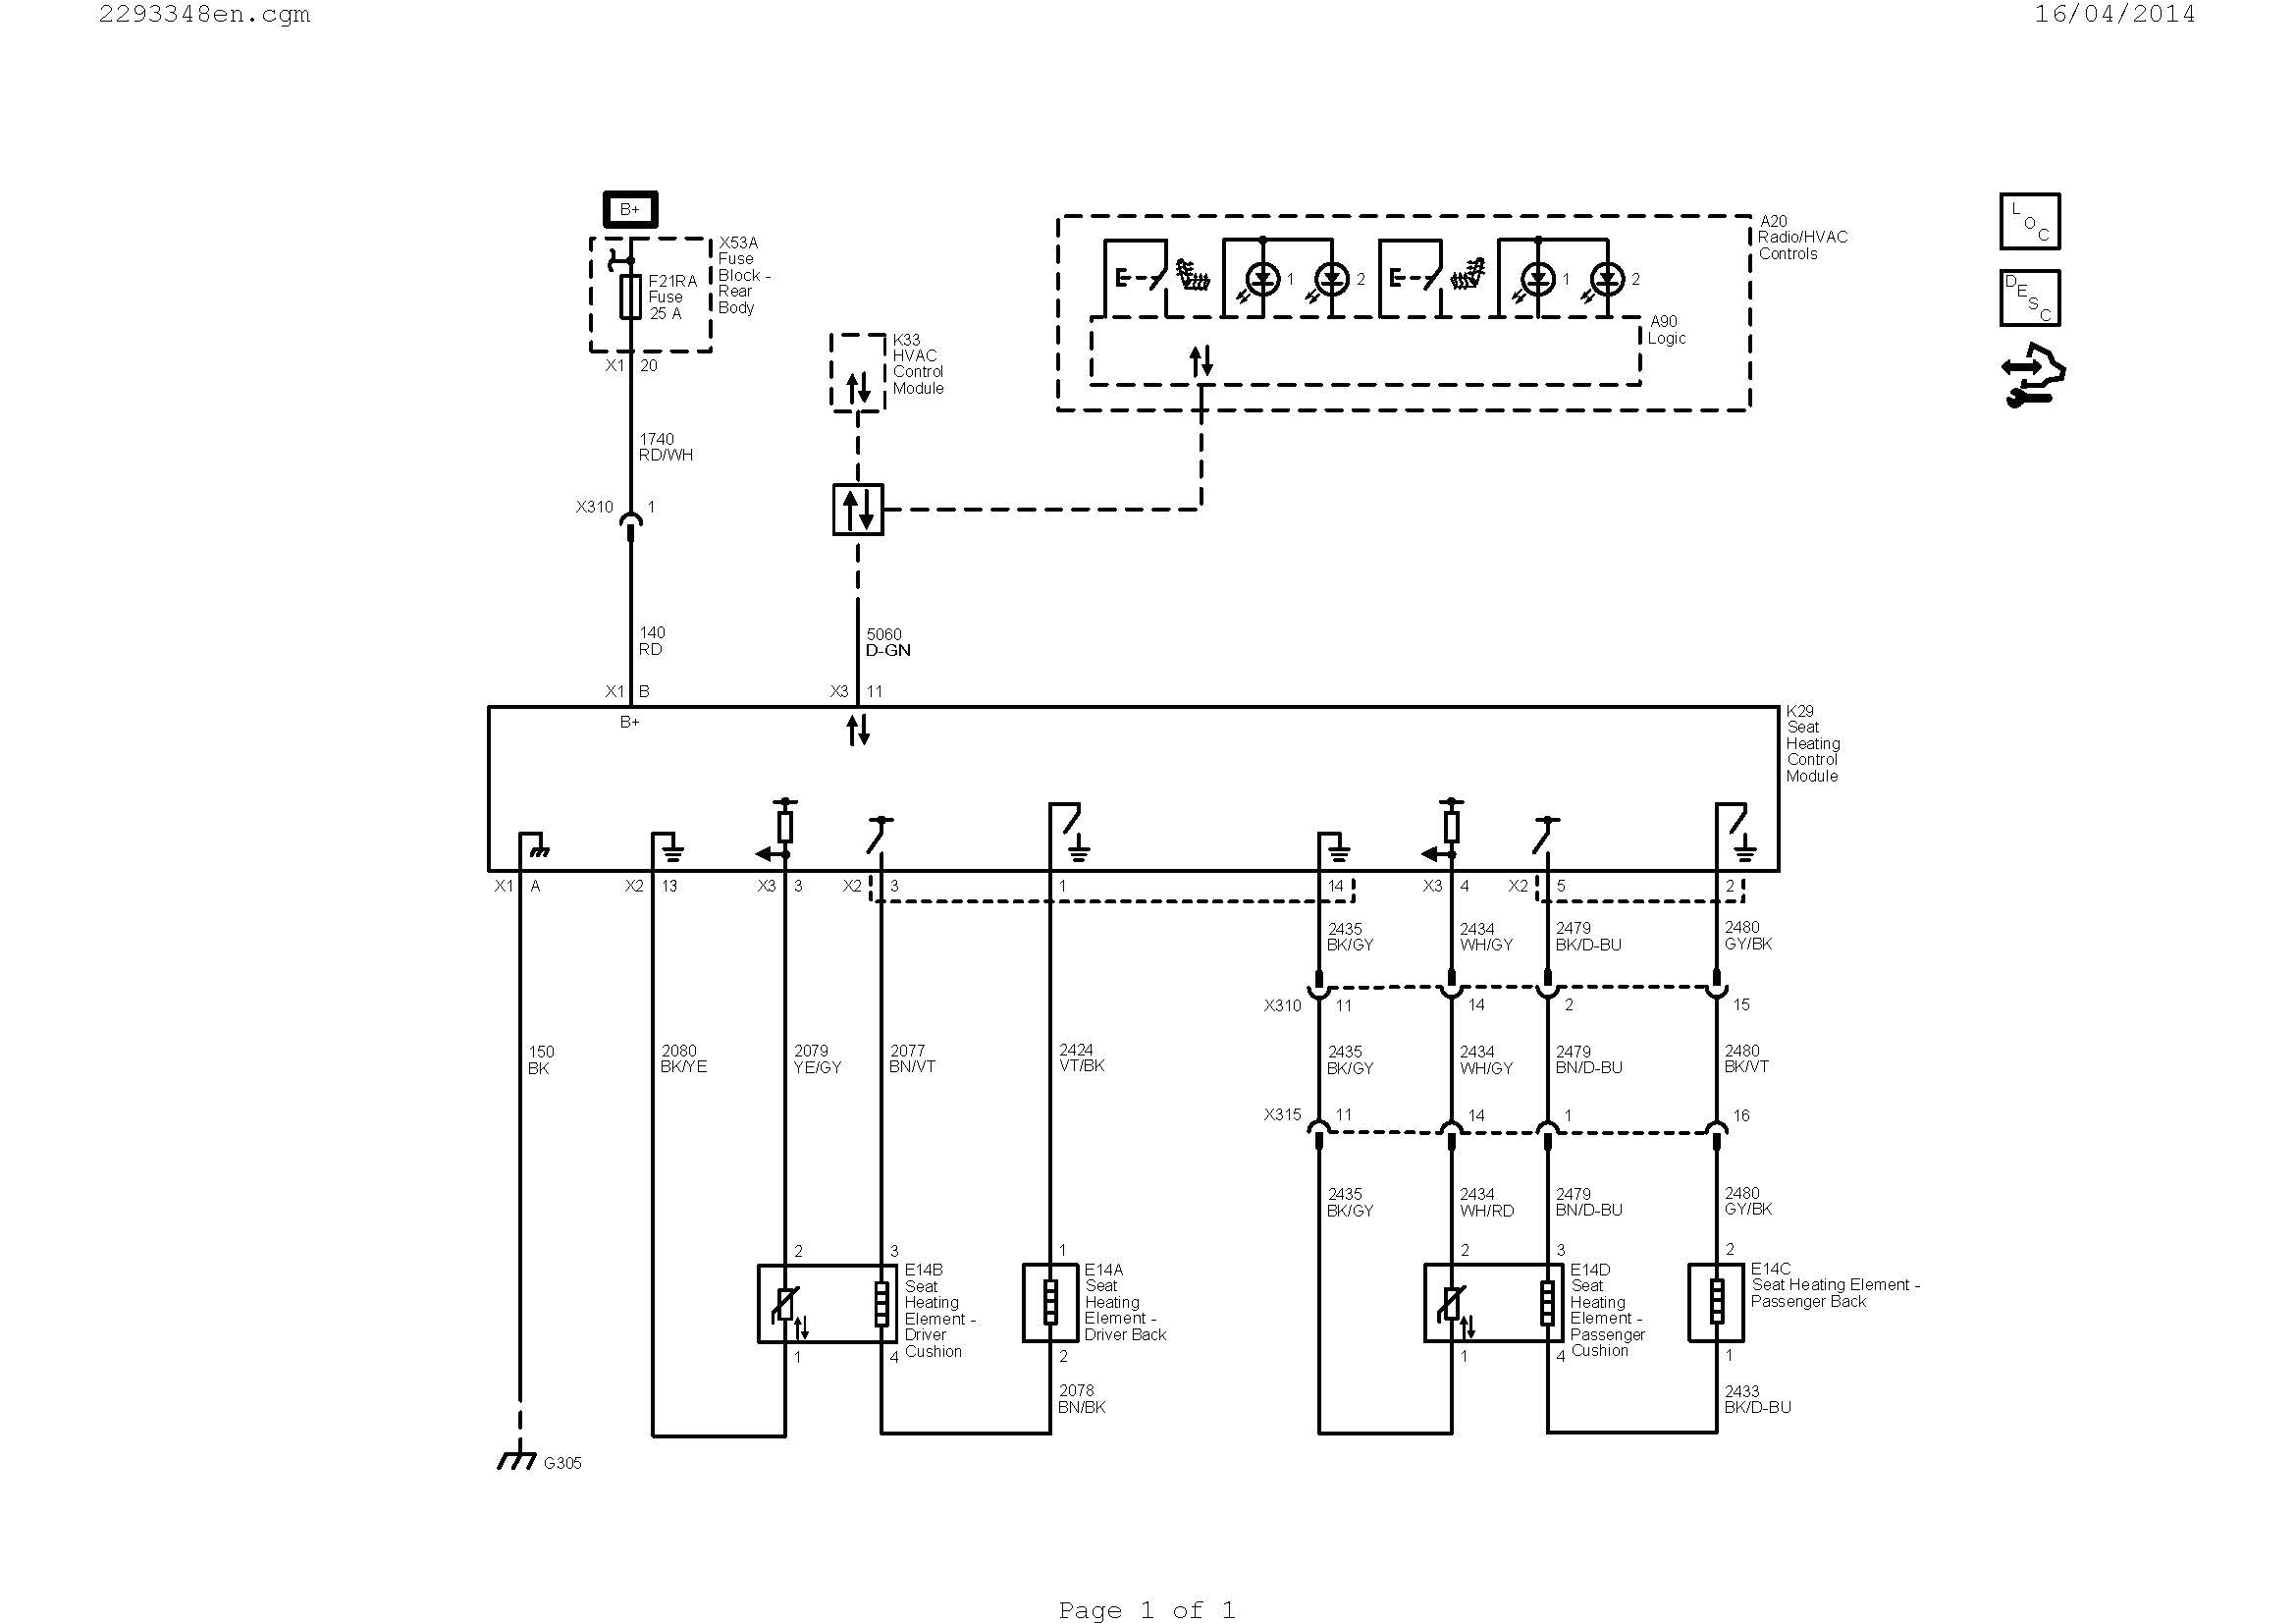 allen bradley 855t wiring diagram tower ac wiring diagram tower ac wiring diagram inspirationa tower ac wiring diagram 16n jpg